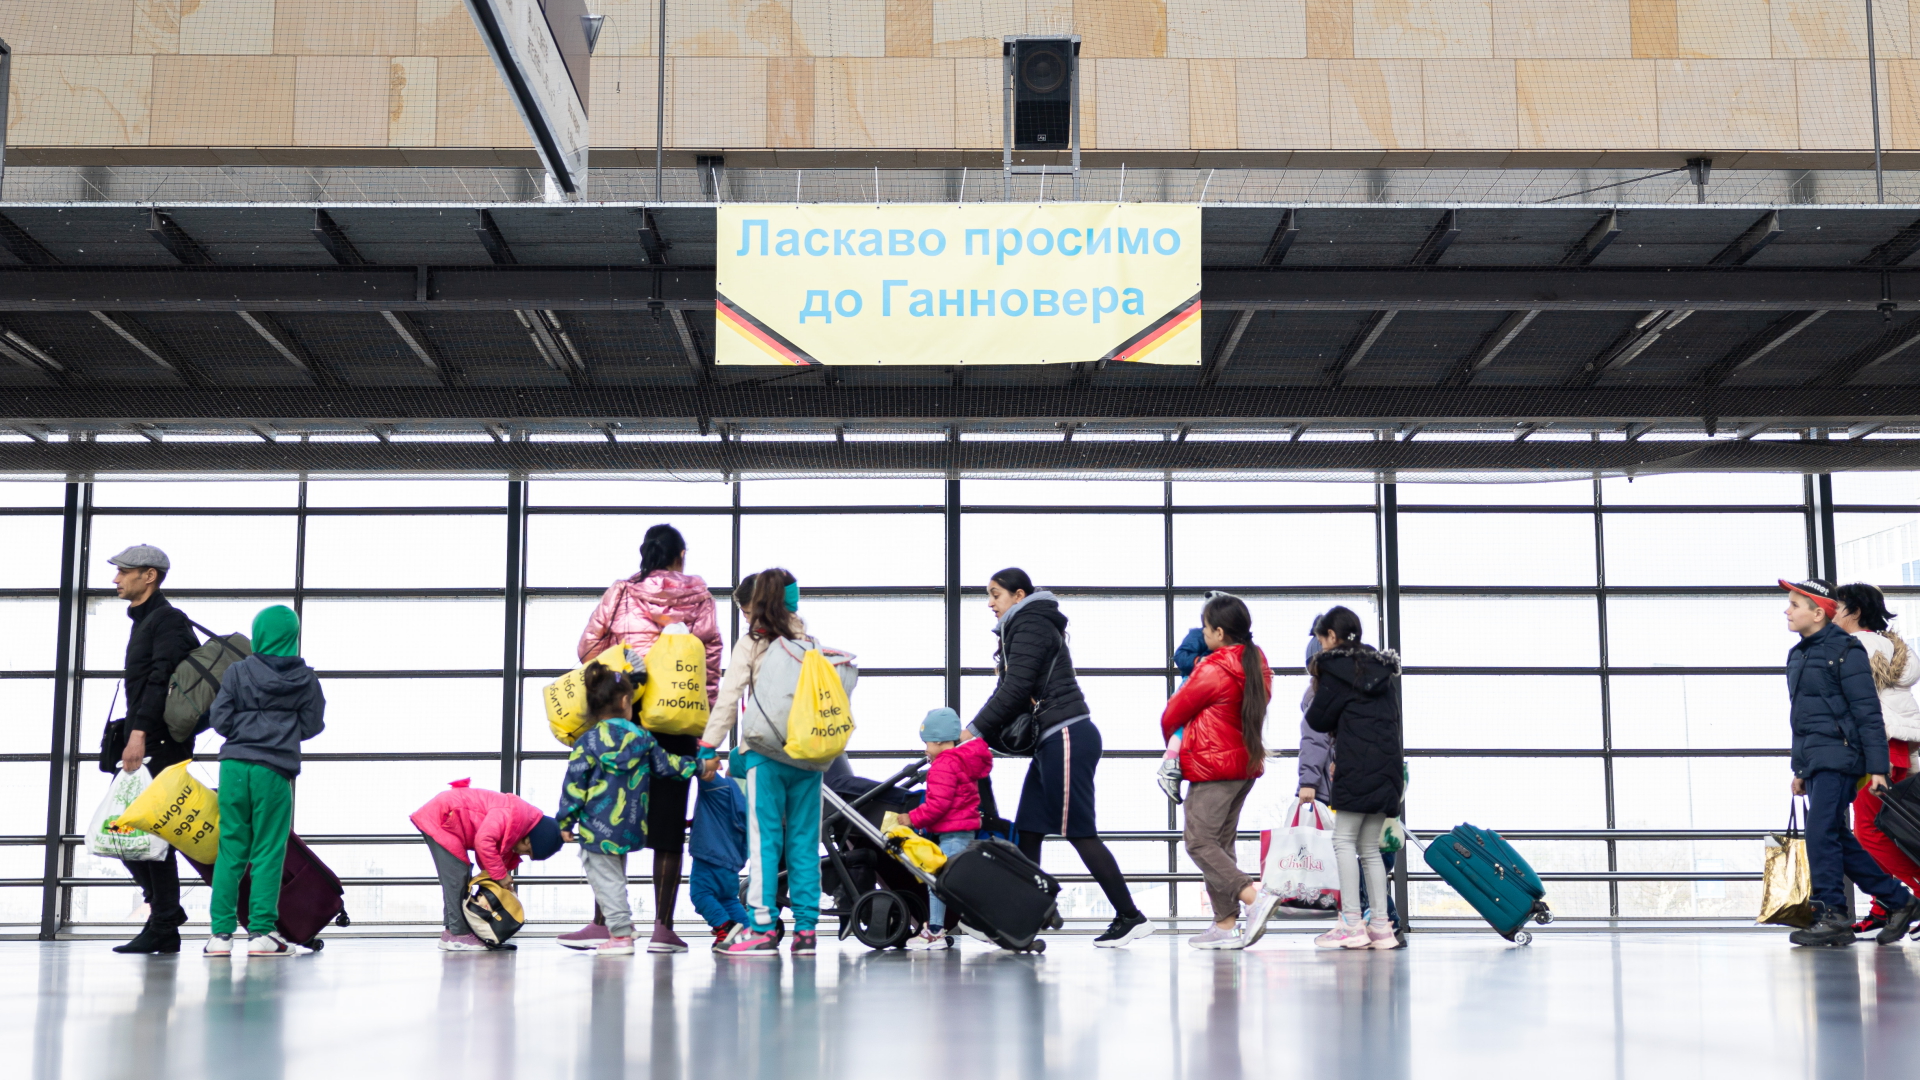 Geflüchtete aus der Ukraine gehen durch die Eingangshalle vom Messebahnhof Laatzen. Auf einem Banner im Hintergrund steht "Willkommen in Hannover" auf Ukrainisch.